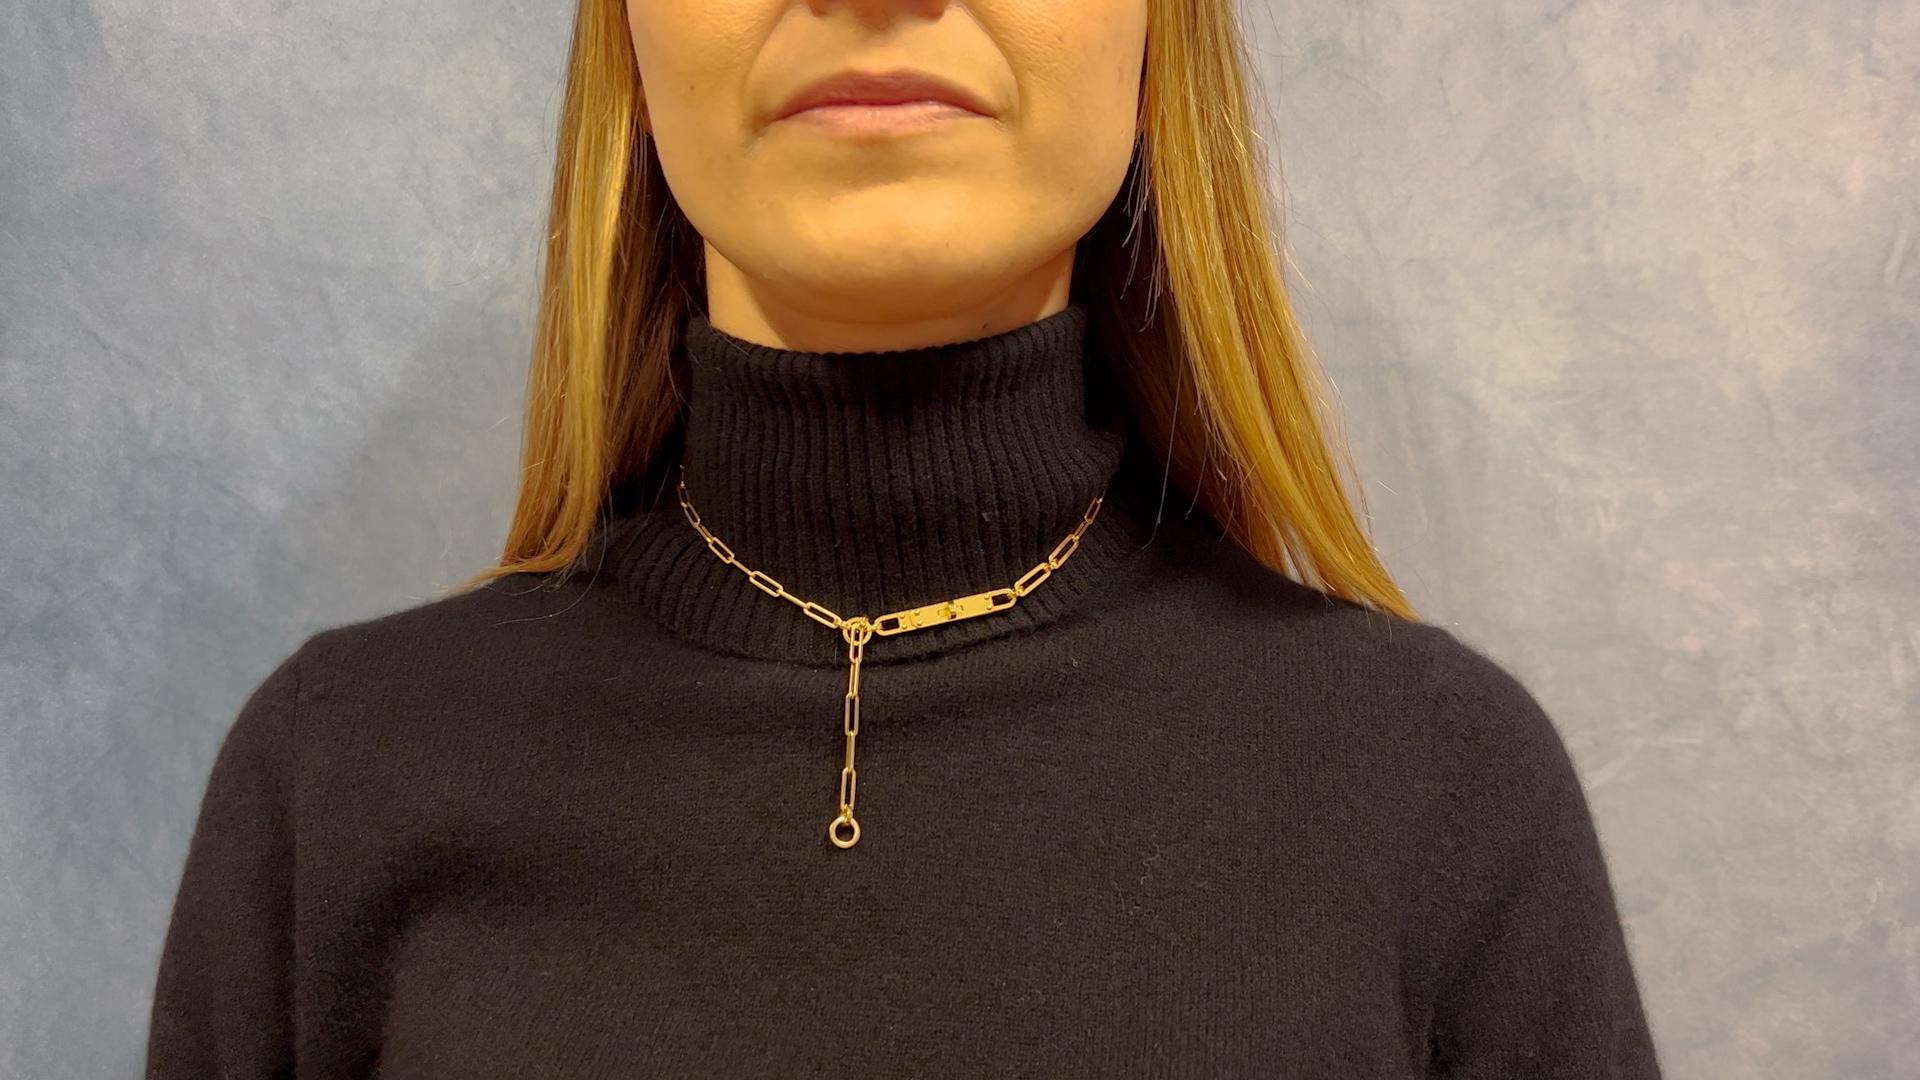 Ein Hermes Französisch 18k Gelbgold Kelly Chaine Lariat Halskette. Gefertigt aus 18 Karat Gelbgold, signiert Hermes, Seriennummer 22AE156074 mit französischen Punzen, Gewicht 22,20 g. Inklusive Originalverpackung. ca. 2020. Die Halskette ist 16 ½